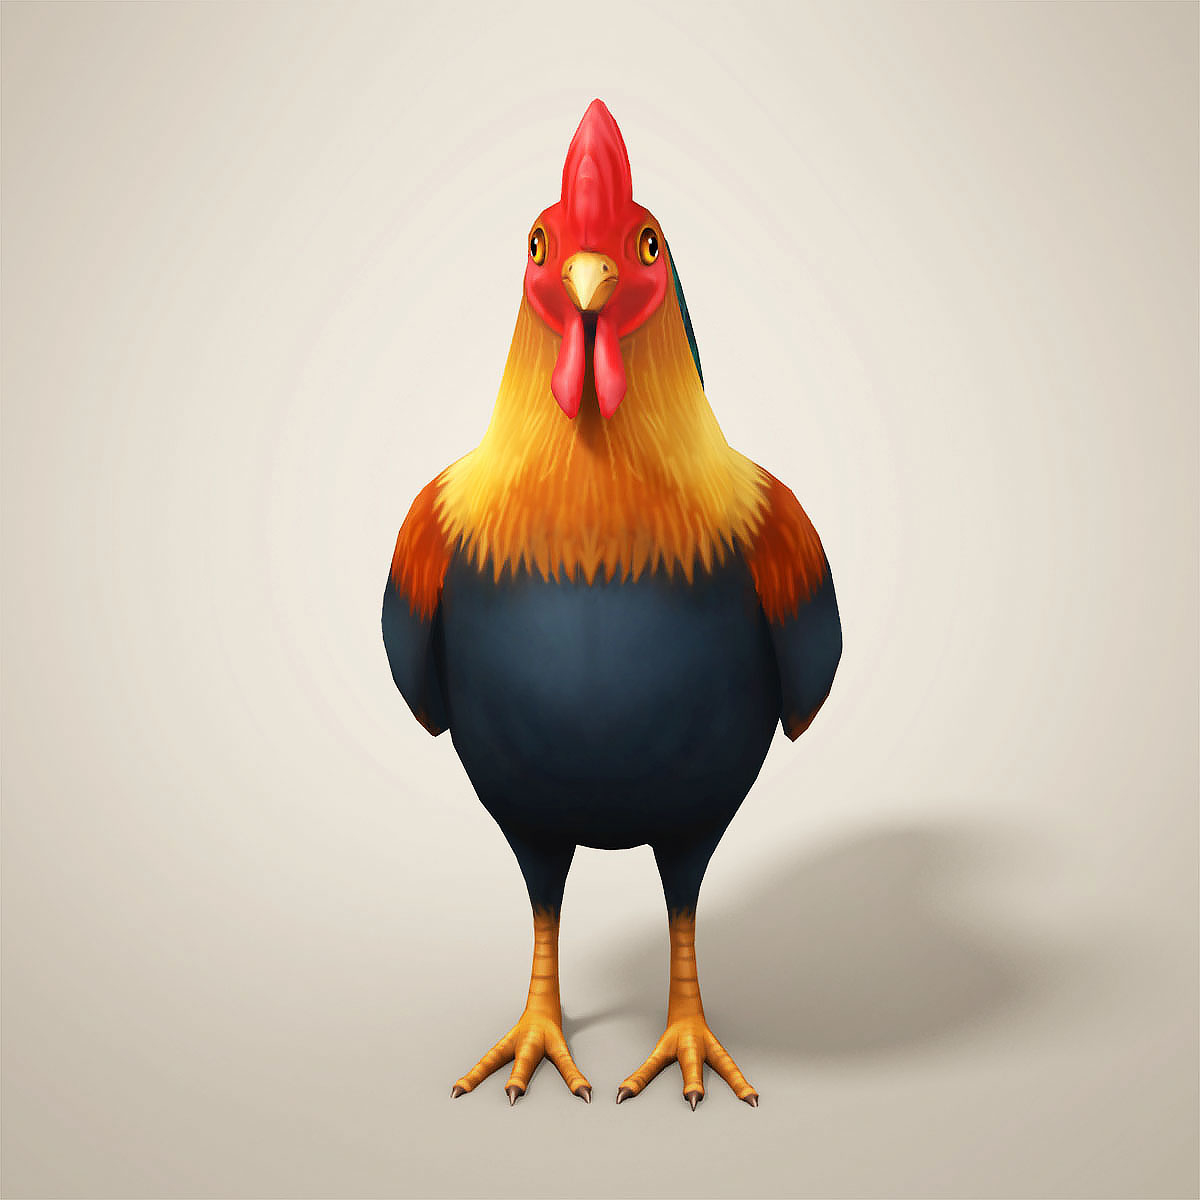 Chicken cartoon 3D model - TurboSquid 1238305